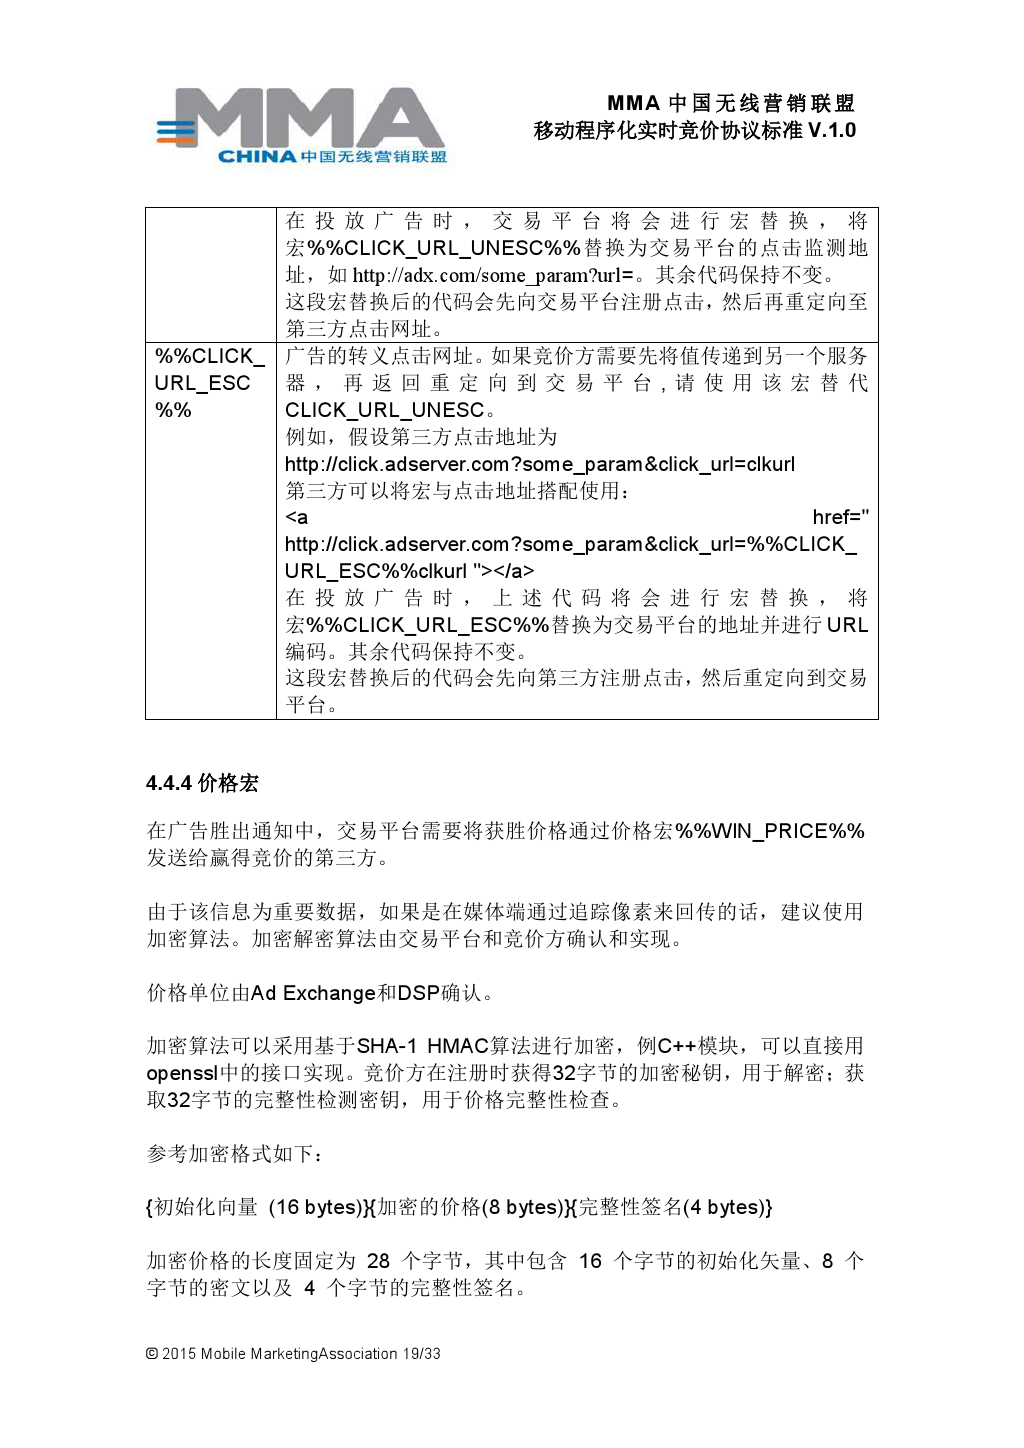 MMA中国无线营销联盟移动程序化实时竞价协议标准V.1.0_000020